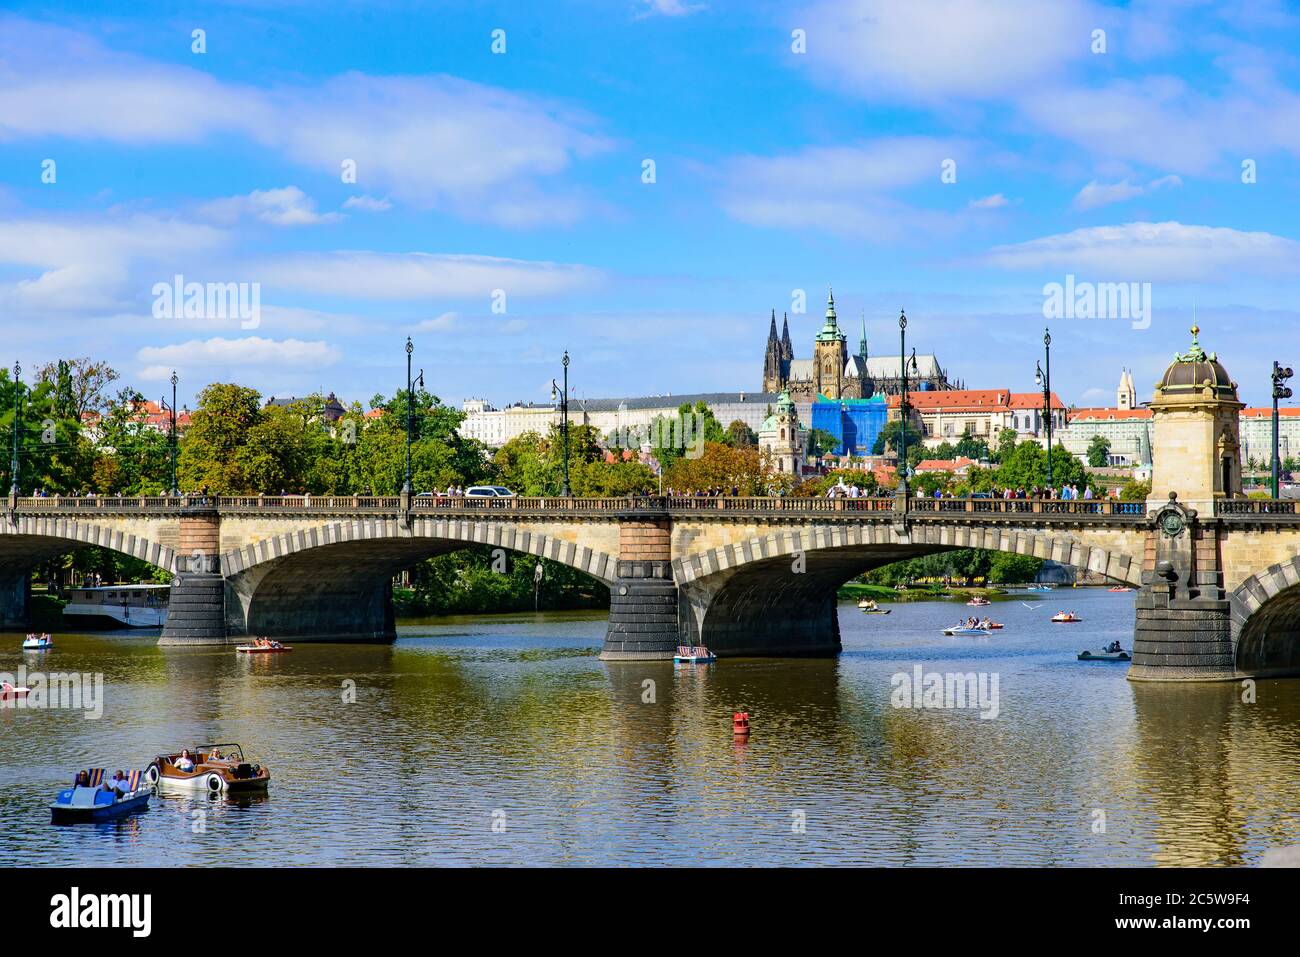 Pont de la légion sur la Vltava avec le château de Prague en arrière-plan à Prague, République tchèque Banque D'Images